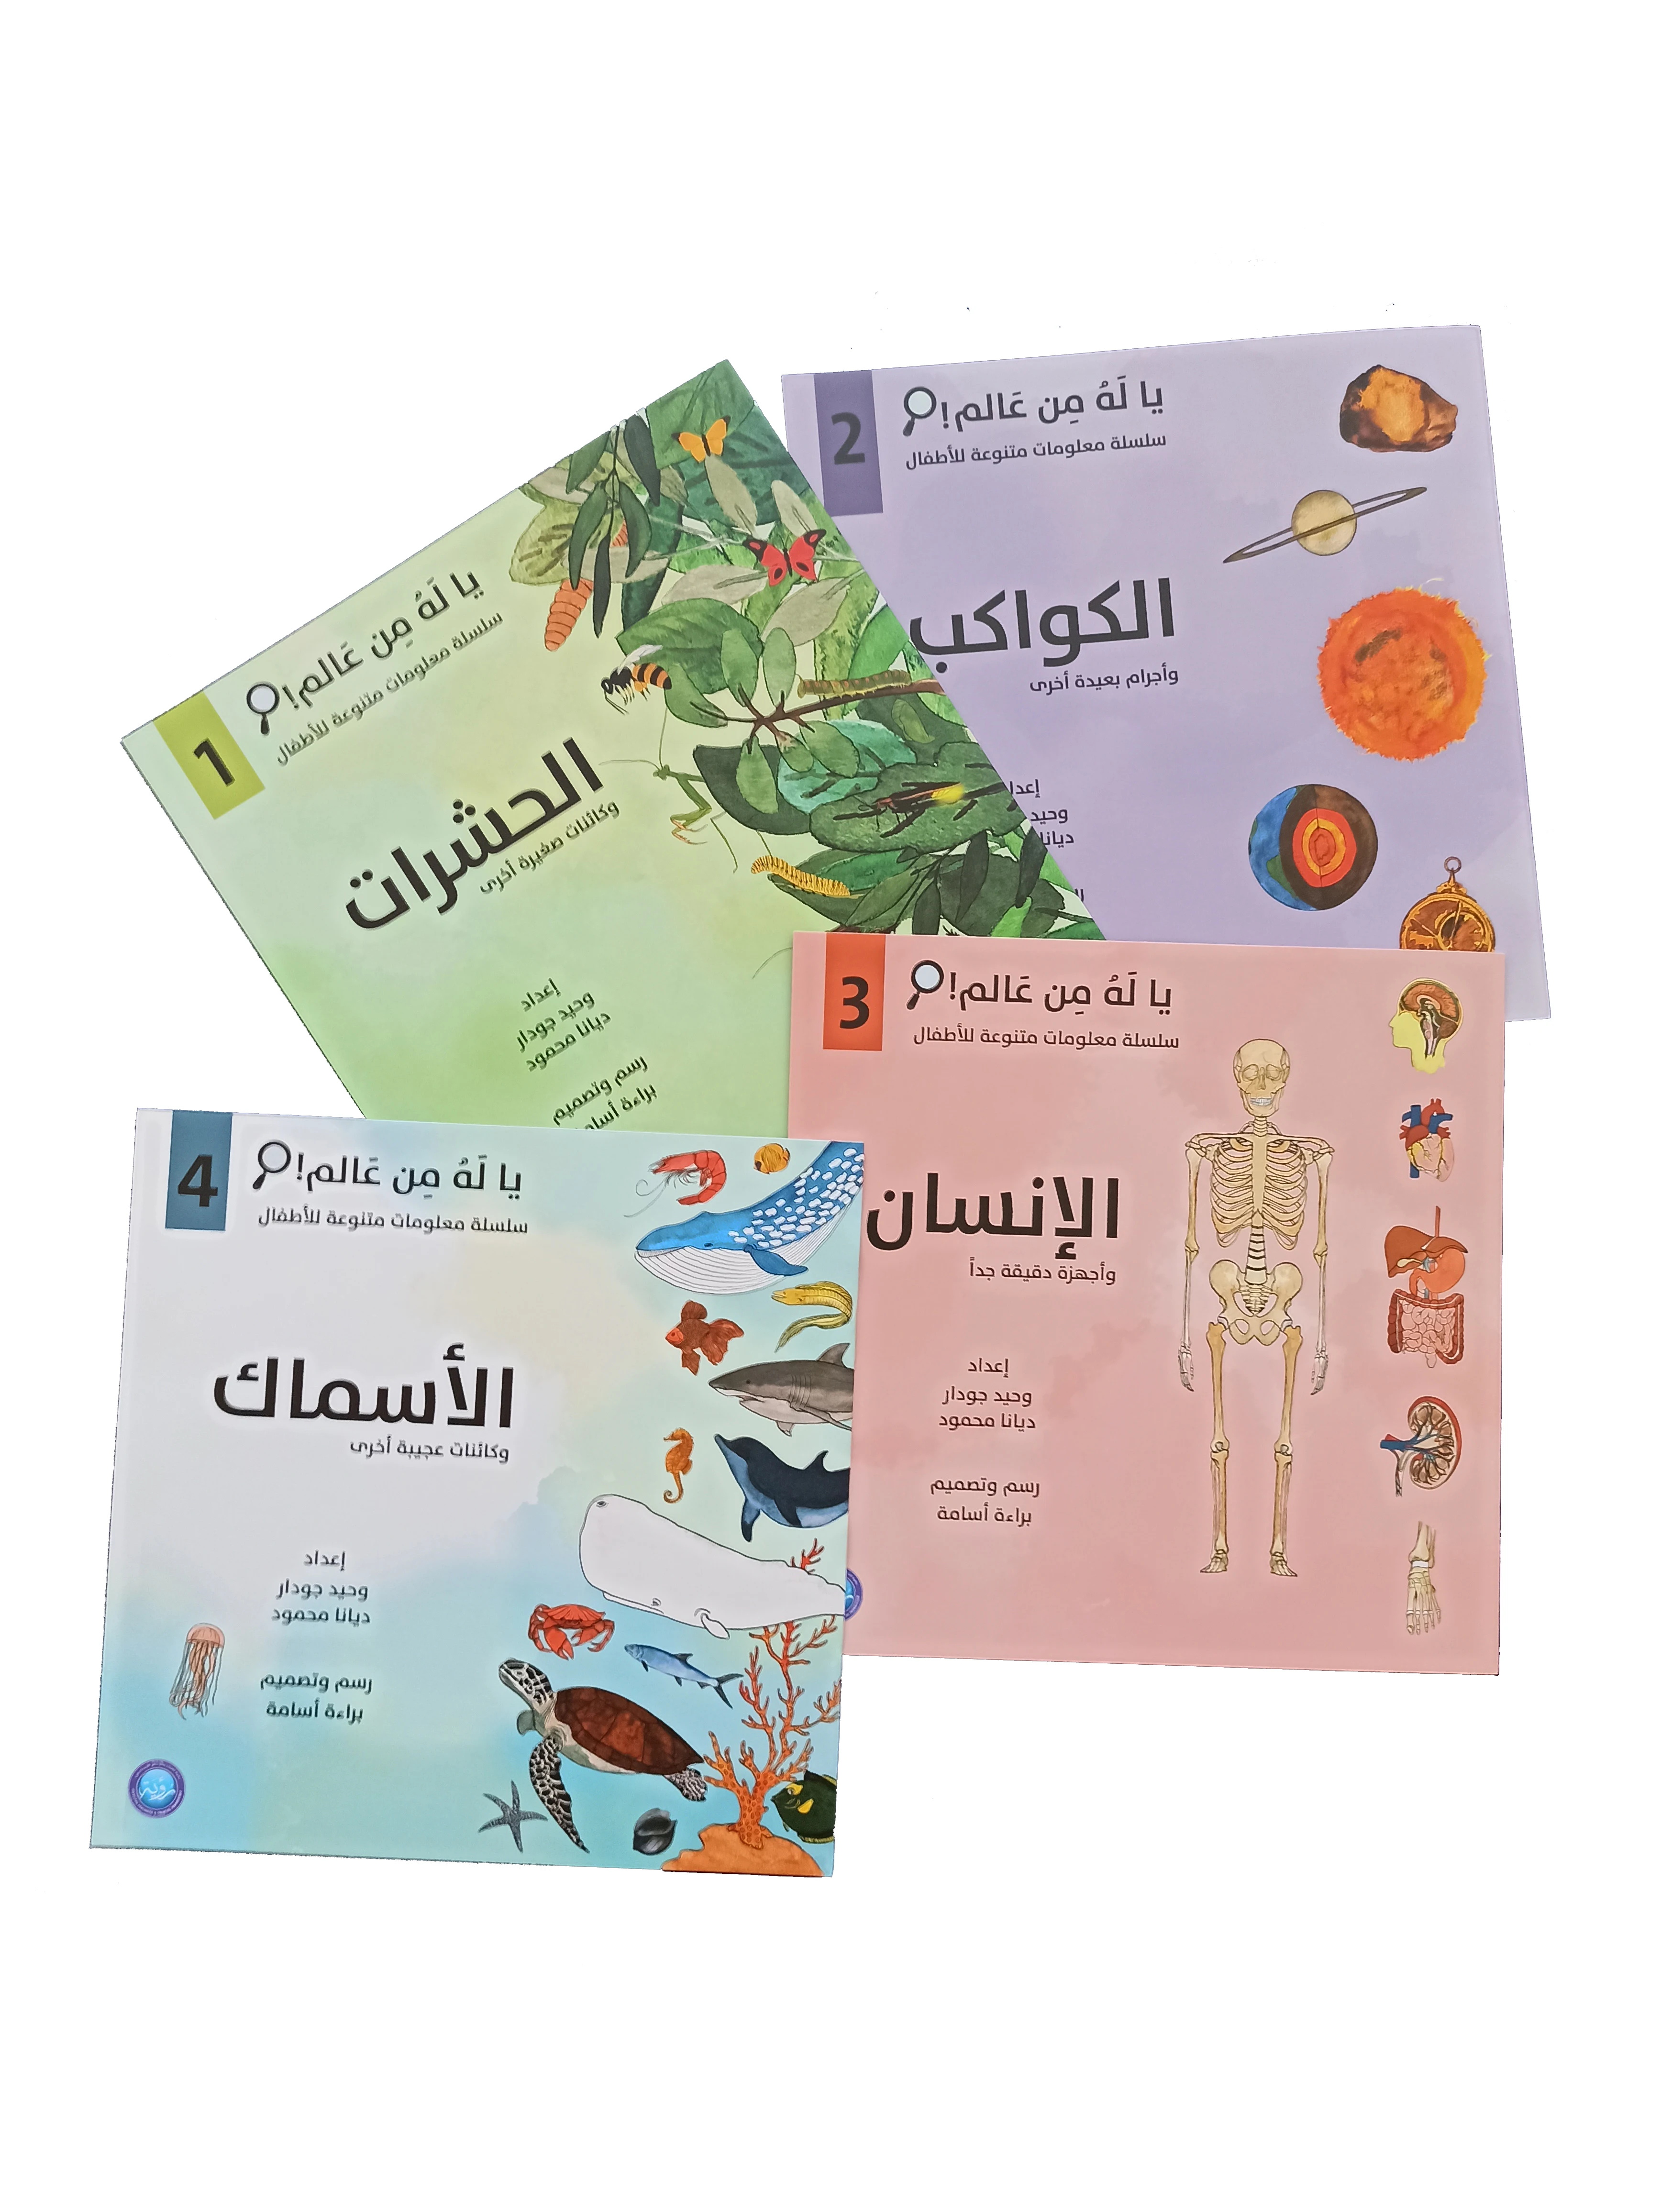 lingua-arabe-educacao-imagens-livros-anatomia-humana-İnsects-criaturas-do-mar-astronomia-e-a-terra-aprendizagem-precoce-criancas